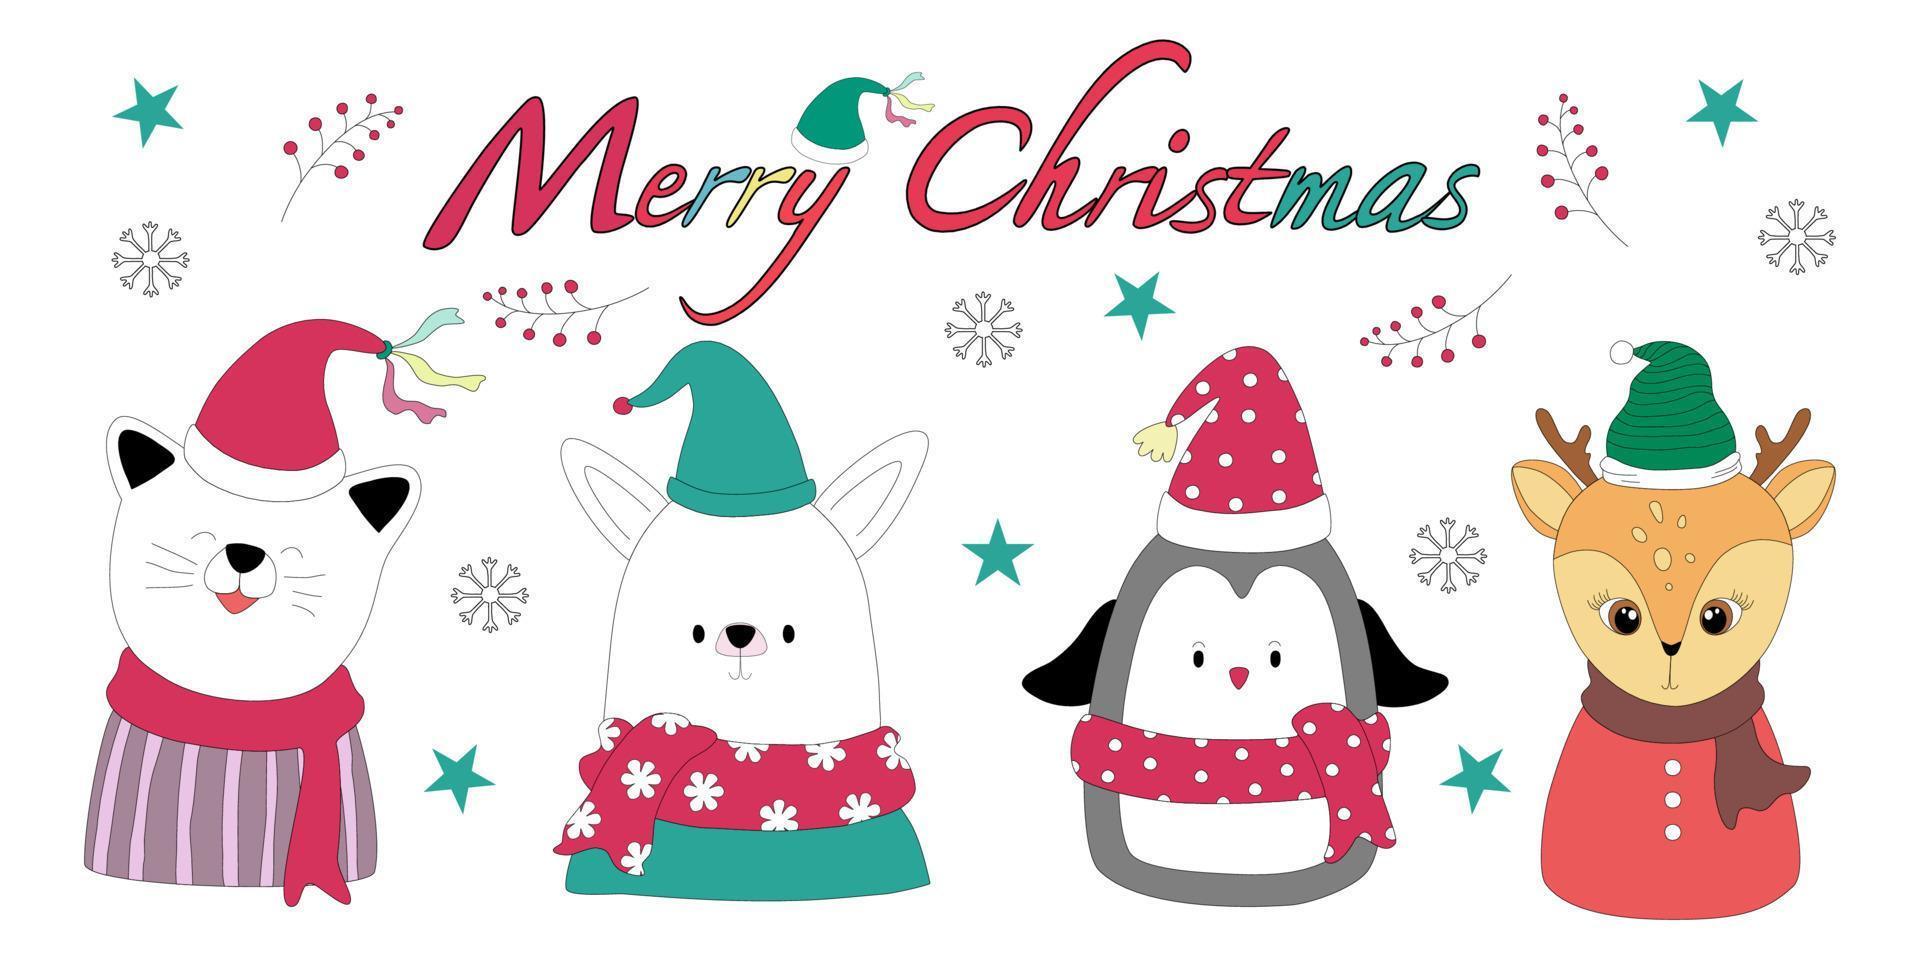 Feliz Natal com um bonito clipart de personagem projetado em estilo doodle que pode ser aplicado a diferentes temas de natal de acordo com suas preferências. vetor